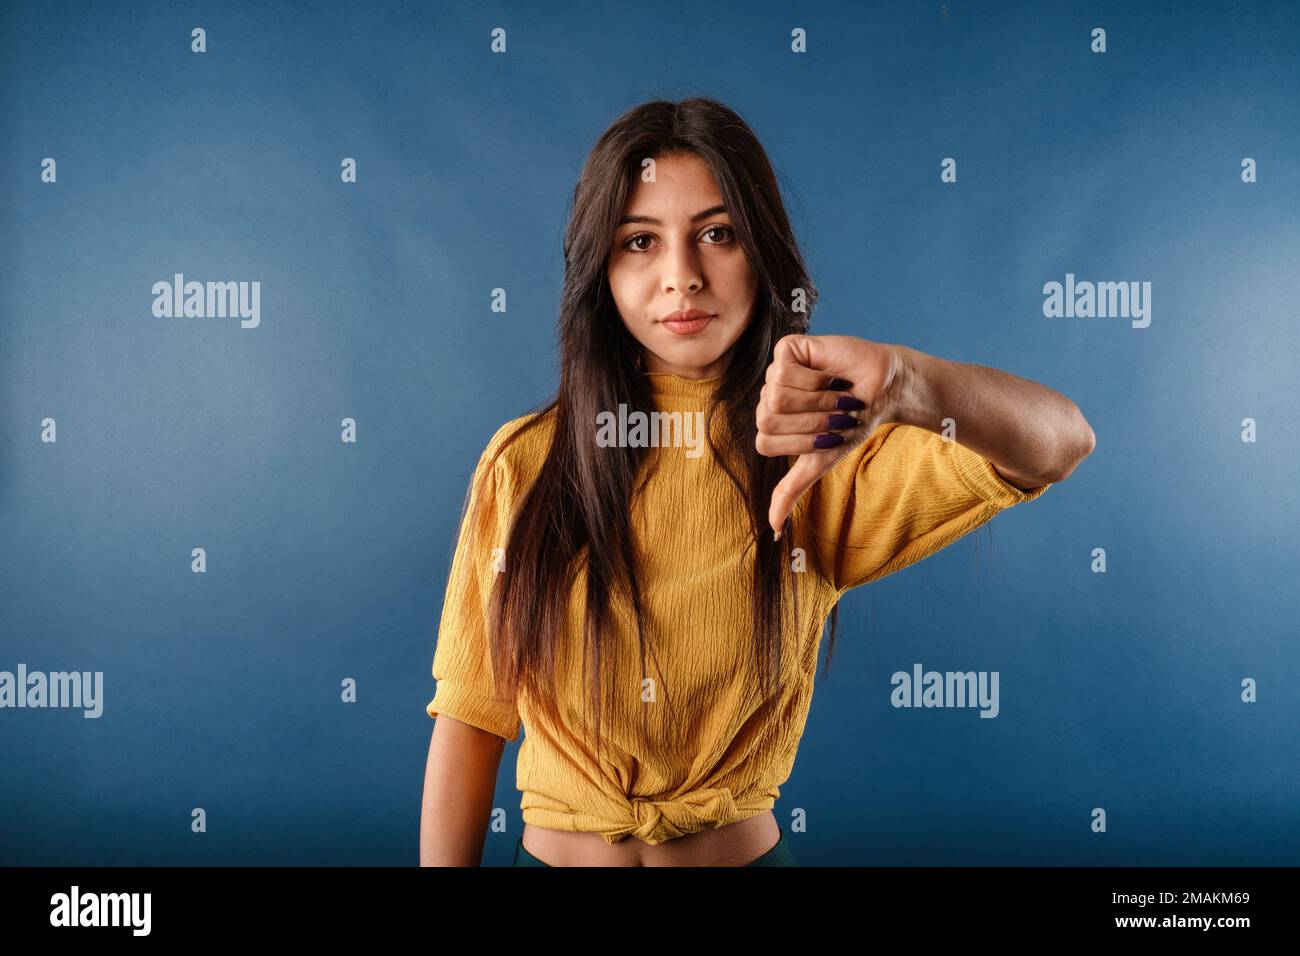 Das Porträt einer jungen brünetten Frau, isoliert auf blauem Hintergrund, macht ein Daumen-nach-unten-Schild, während sie mit einem unzufriedenen Ausdruck in die Kamera schaut. Nein. Nein Stockfoto